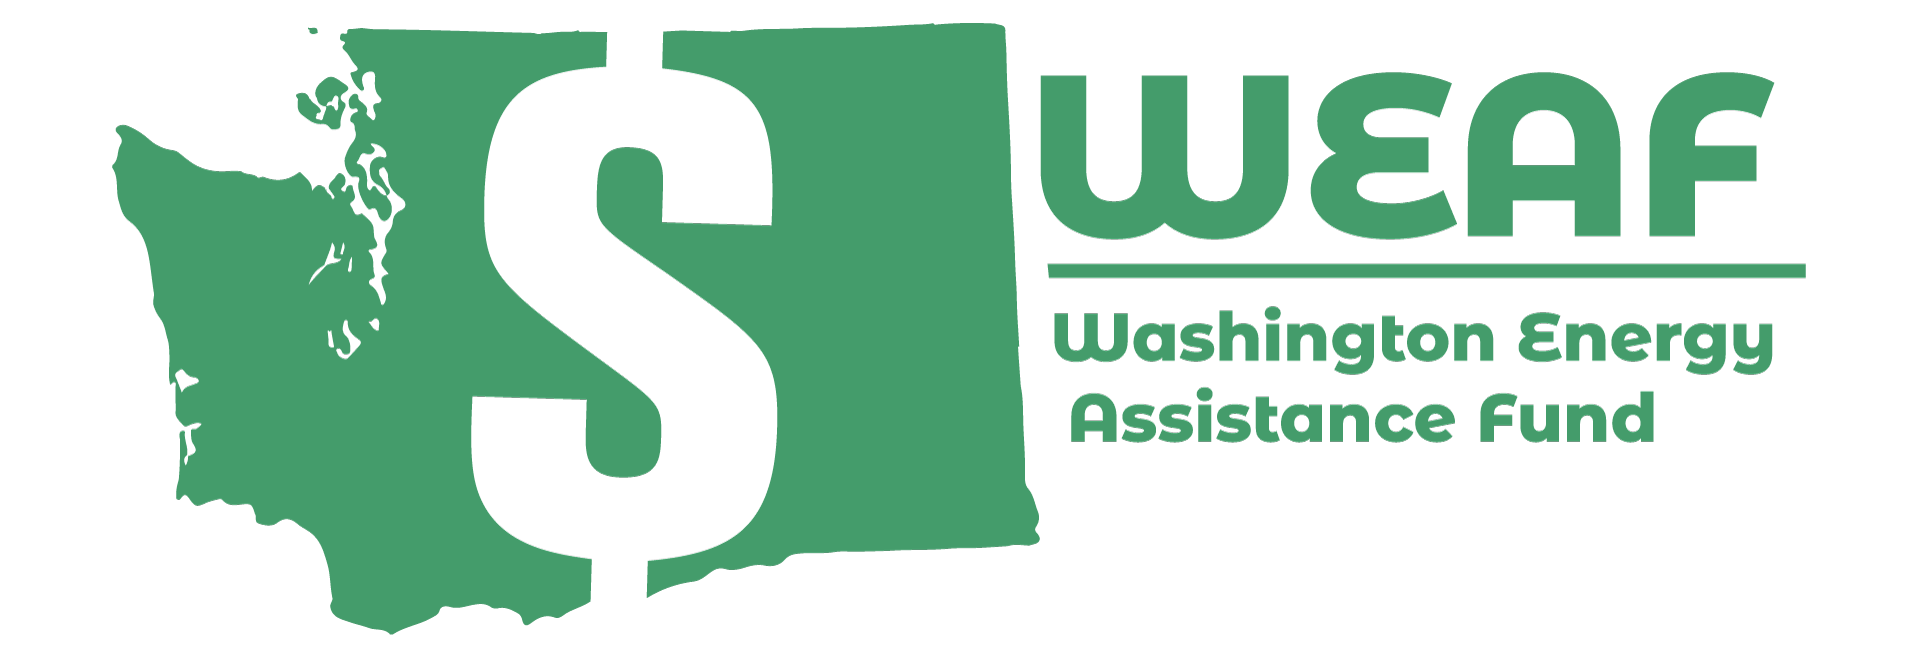 washington energy assistance fund